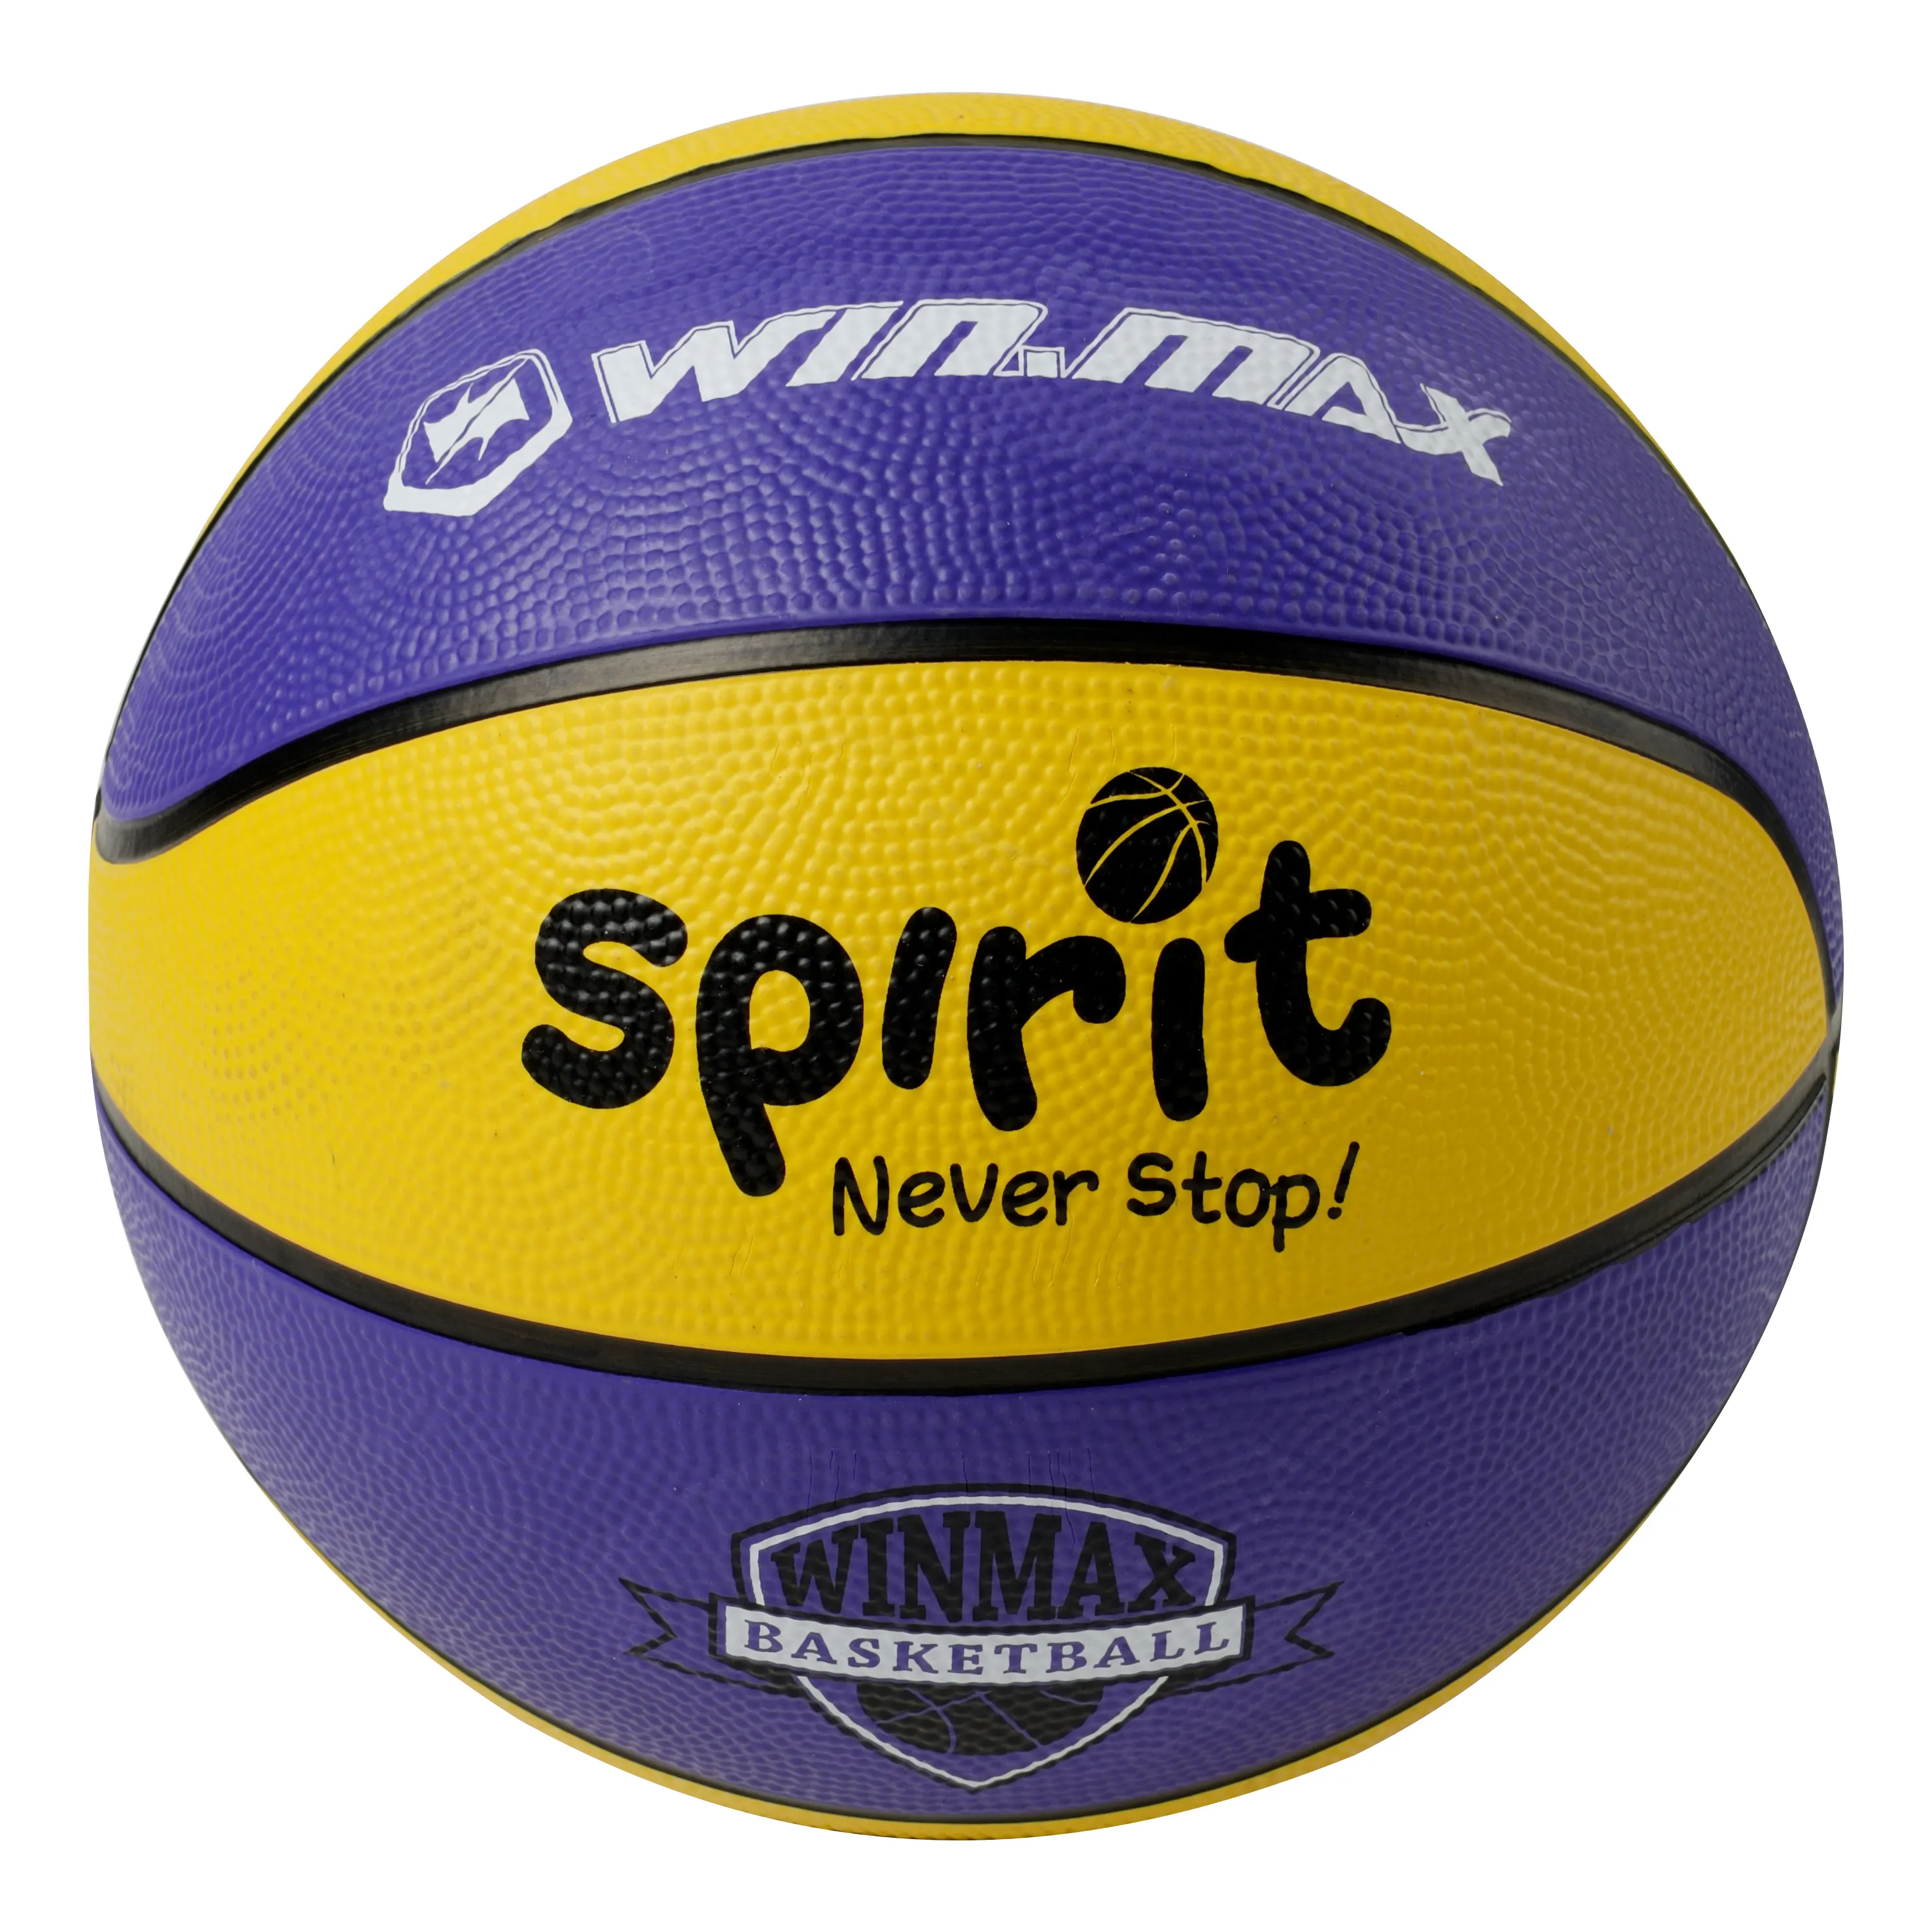 Nuovo arrivo WMY90011 pallacanestro prezzo economico palla da basket in gomma taglia 3